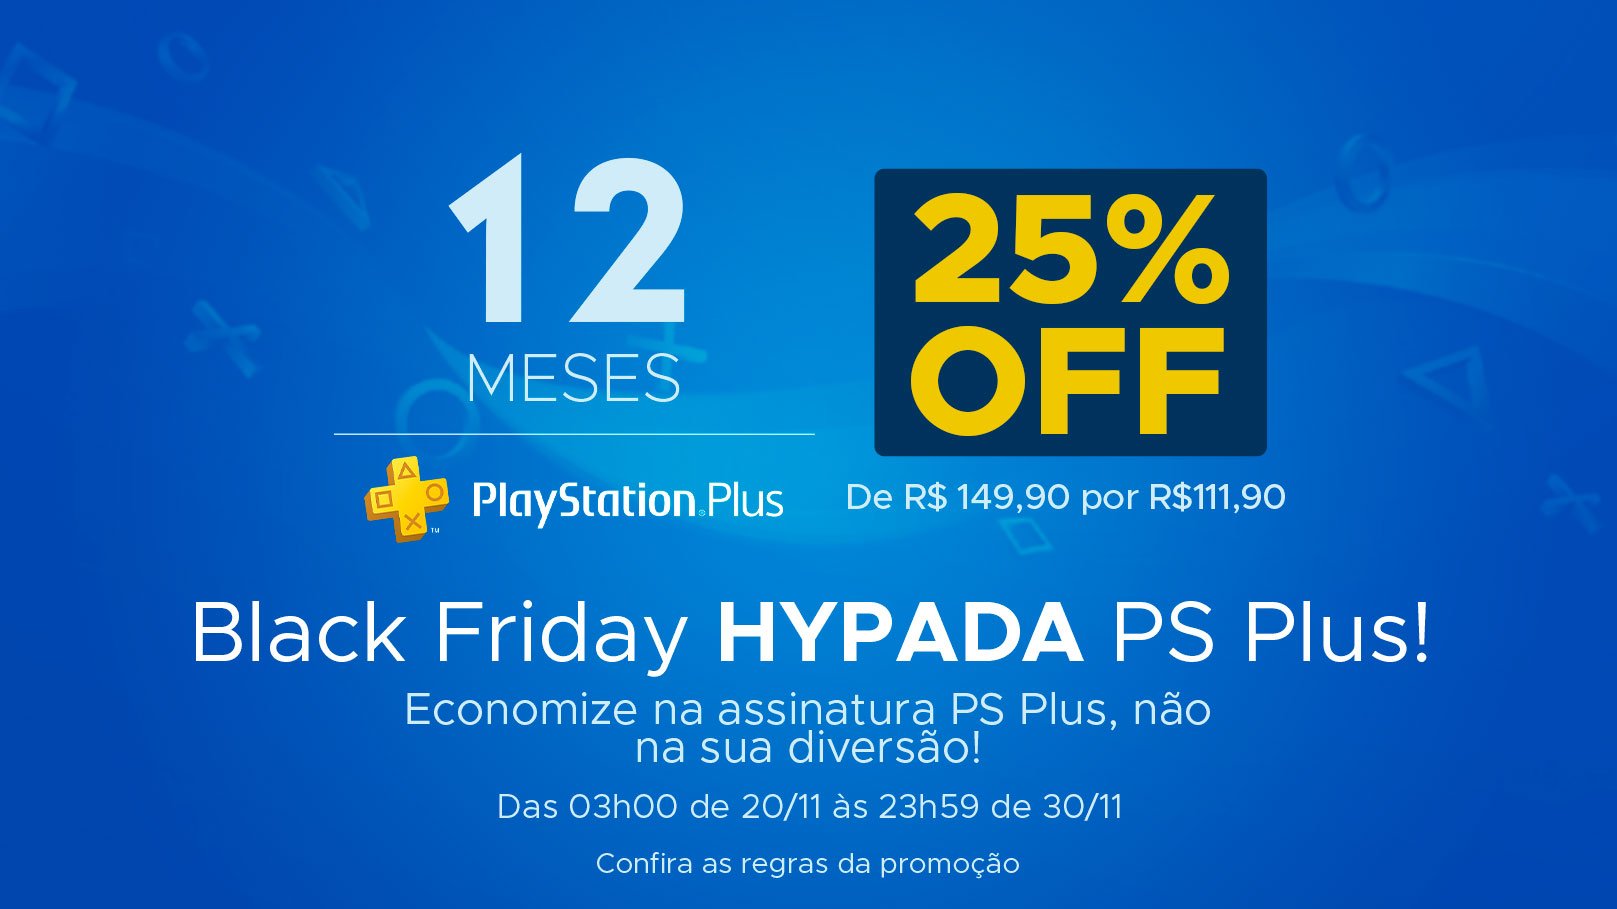 Black Friday: Hype games tem 12 meses de PSN Plus com 36% de desconto